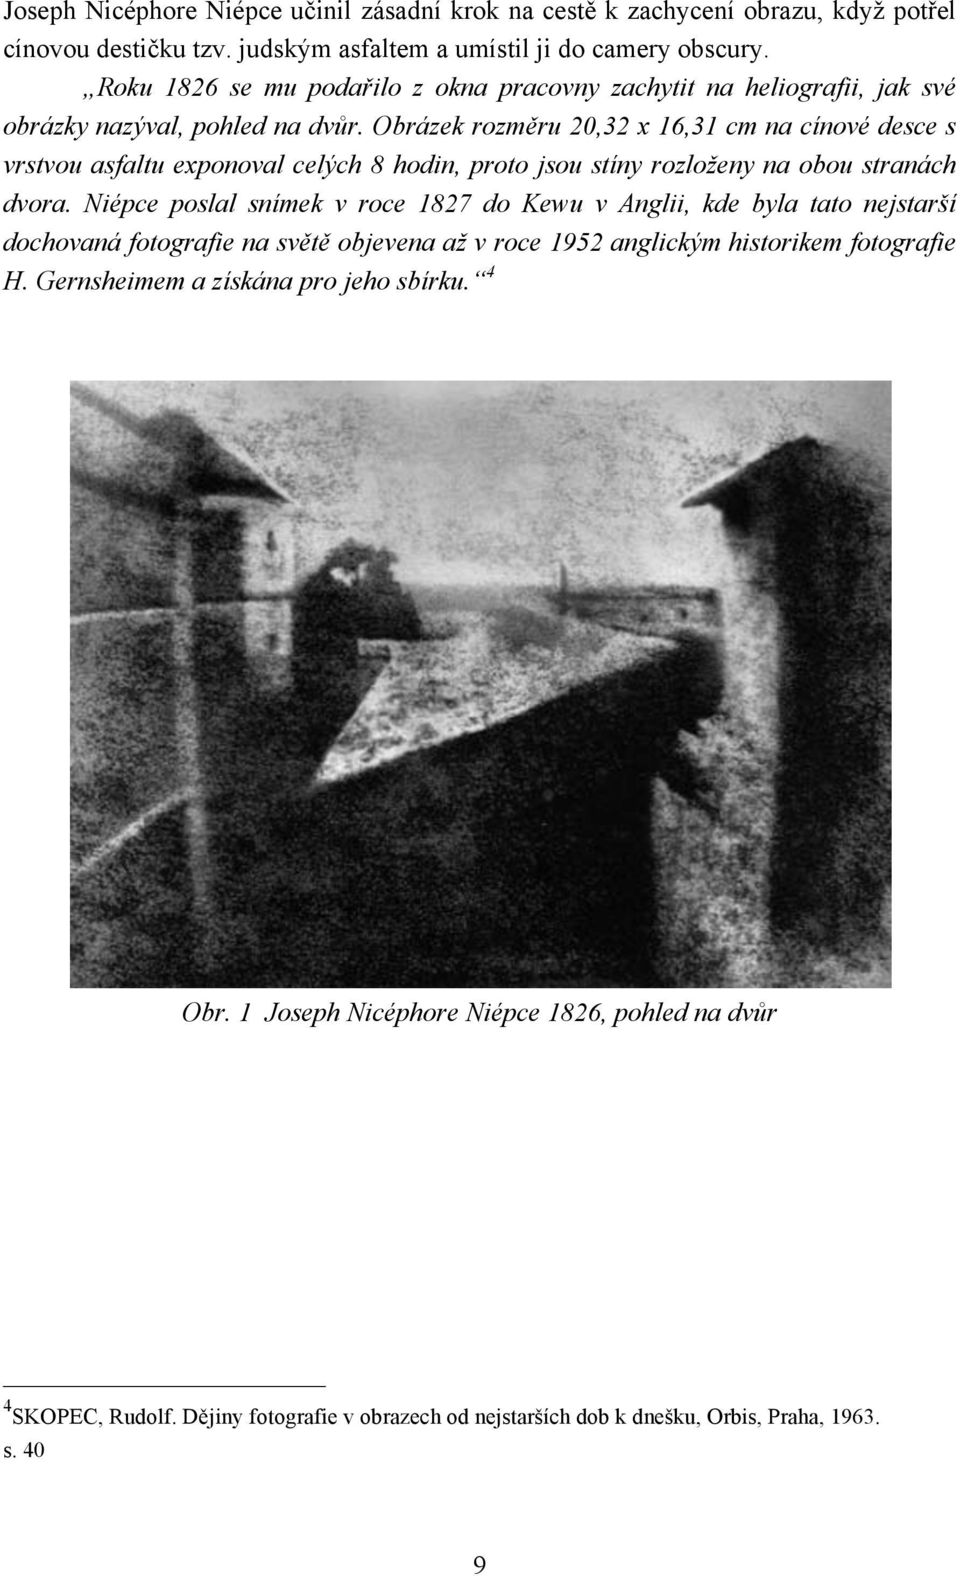 Obrázek rozměru 20,32 x 16,31 cm na cínové desce s vrstvou asfaltu exponoval celých 8 hodin, proto jsou stíny rozloženy na obou stranách dvora.